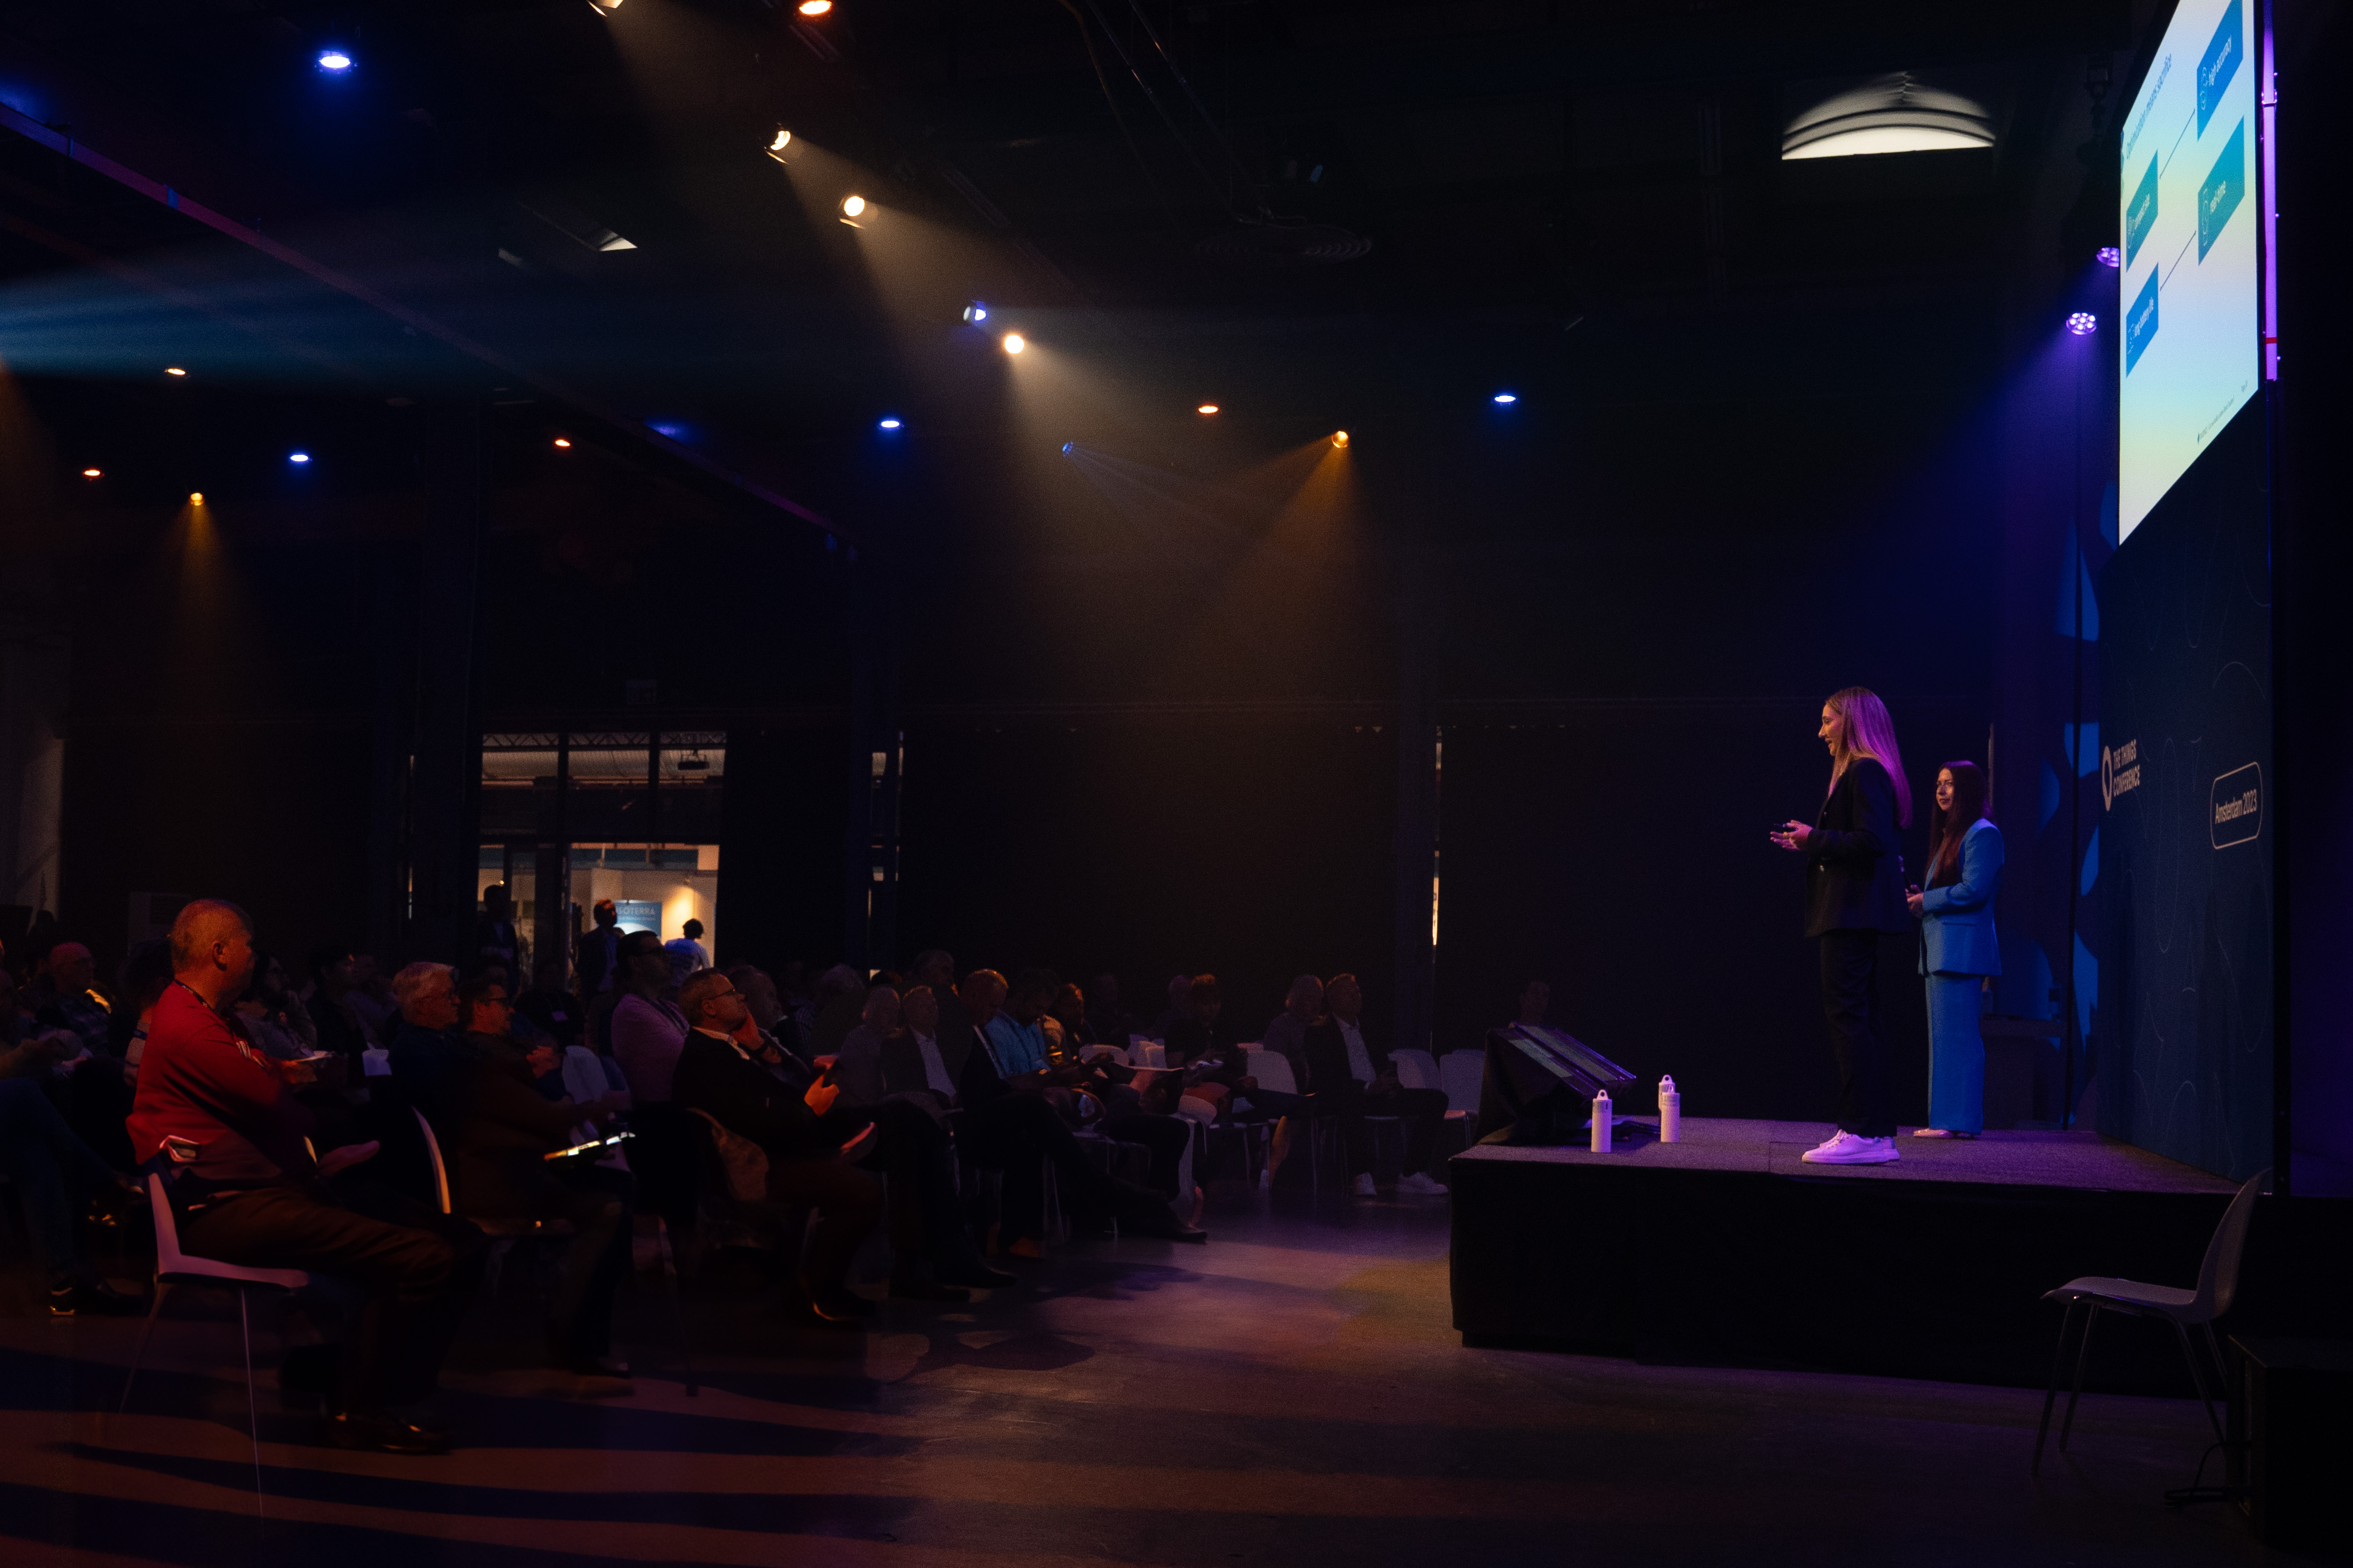 A diretora administrativa Chiara Koopmans lança o truvami no palco na Things Conference em Amsterdã (Foto: Business Wire)